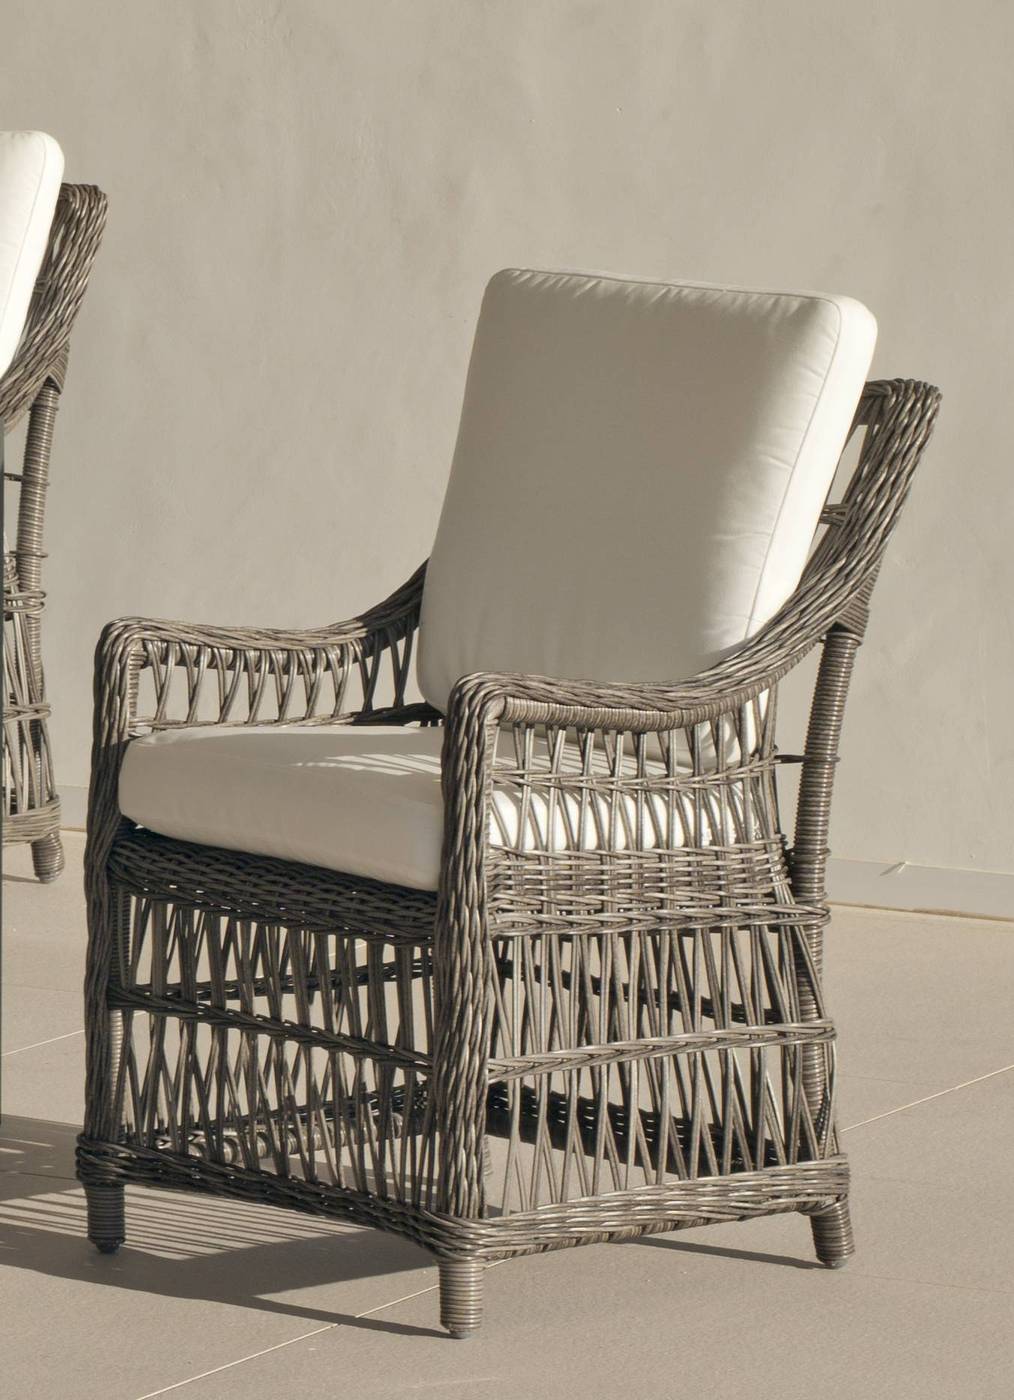 Conjunto Médula-Aluminio 180-6 - Conjunto para jardín de médula y aluminio color gris: 1 mesa comedor de aluminio de 160 cm. + 6 sillones de médula con cojines